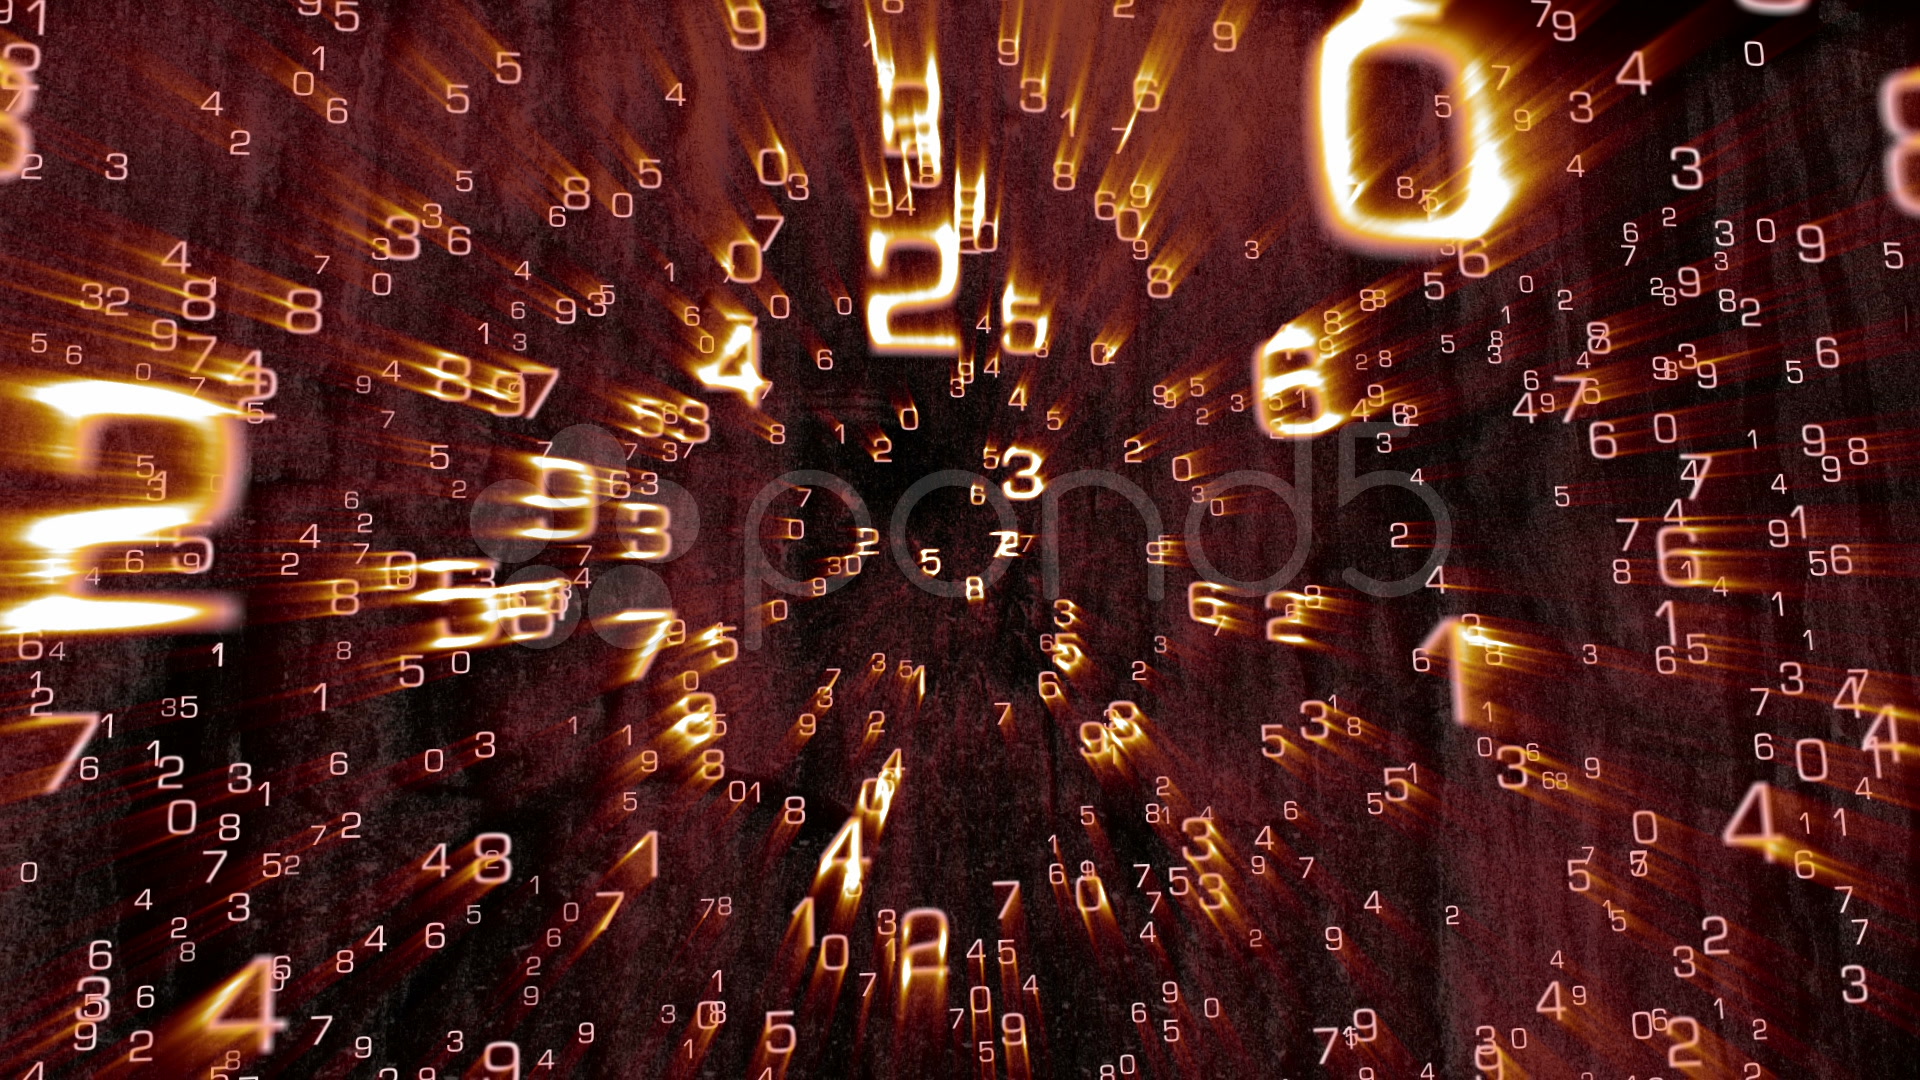 Imagenes De Matematica En 3d - HD Wallpaper 